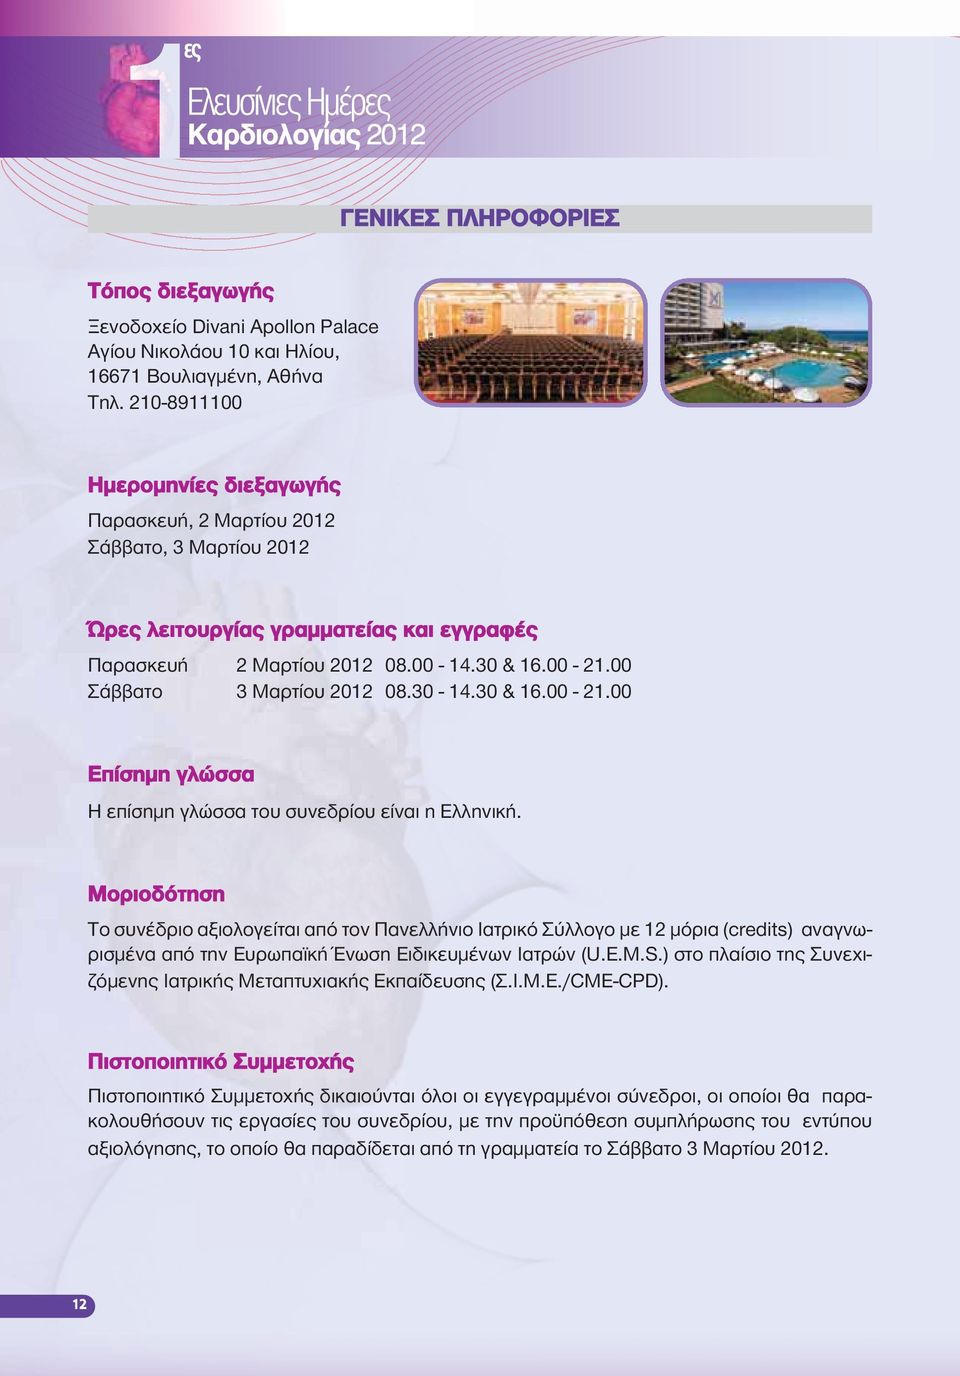 00 Σάββατο 3 Μαρτίου 2012 08.30-14.30 & 16.00-21.00 Επίσημη γλώσσα H επίσημη γλώσσα του συνεδρίου είναι η Ελληνική.